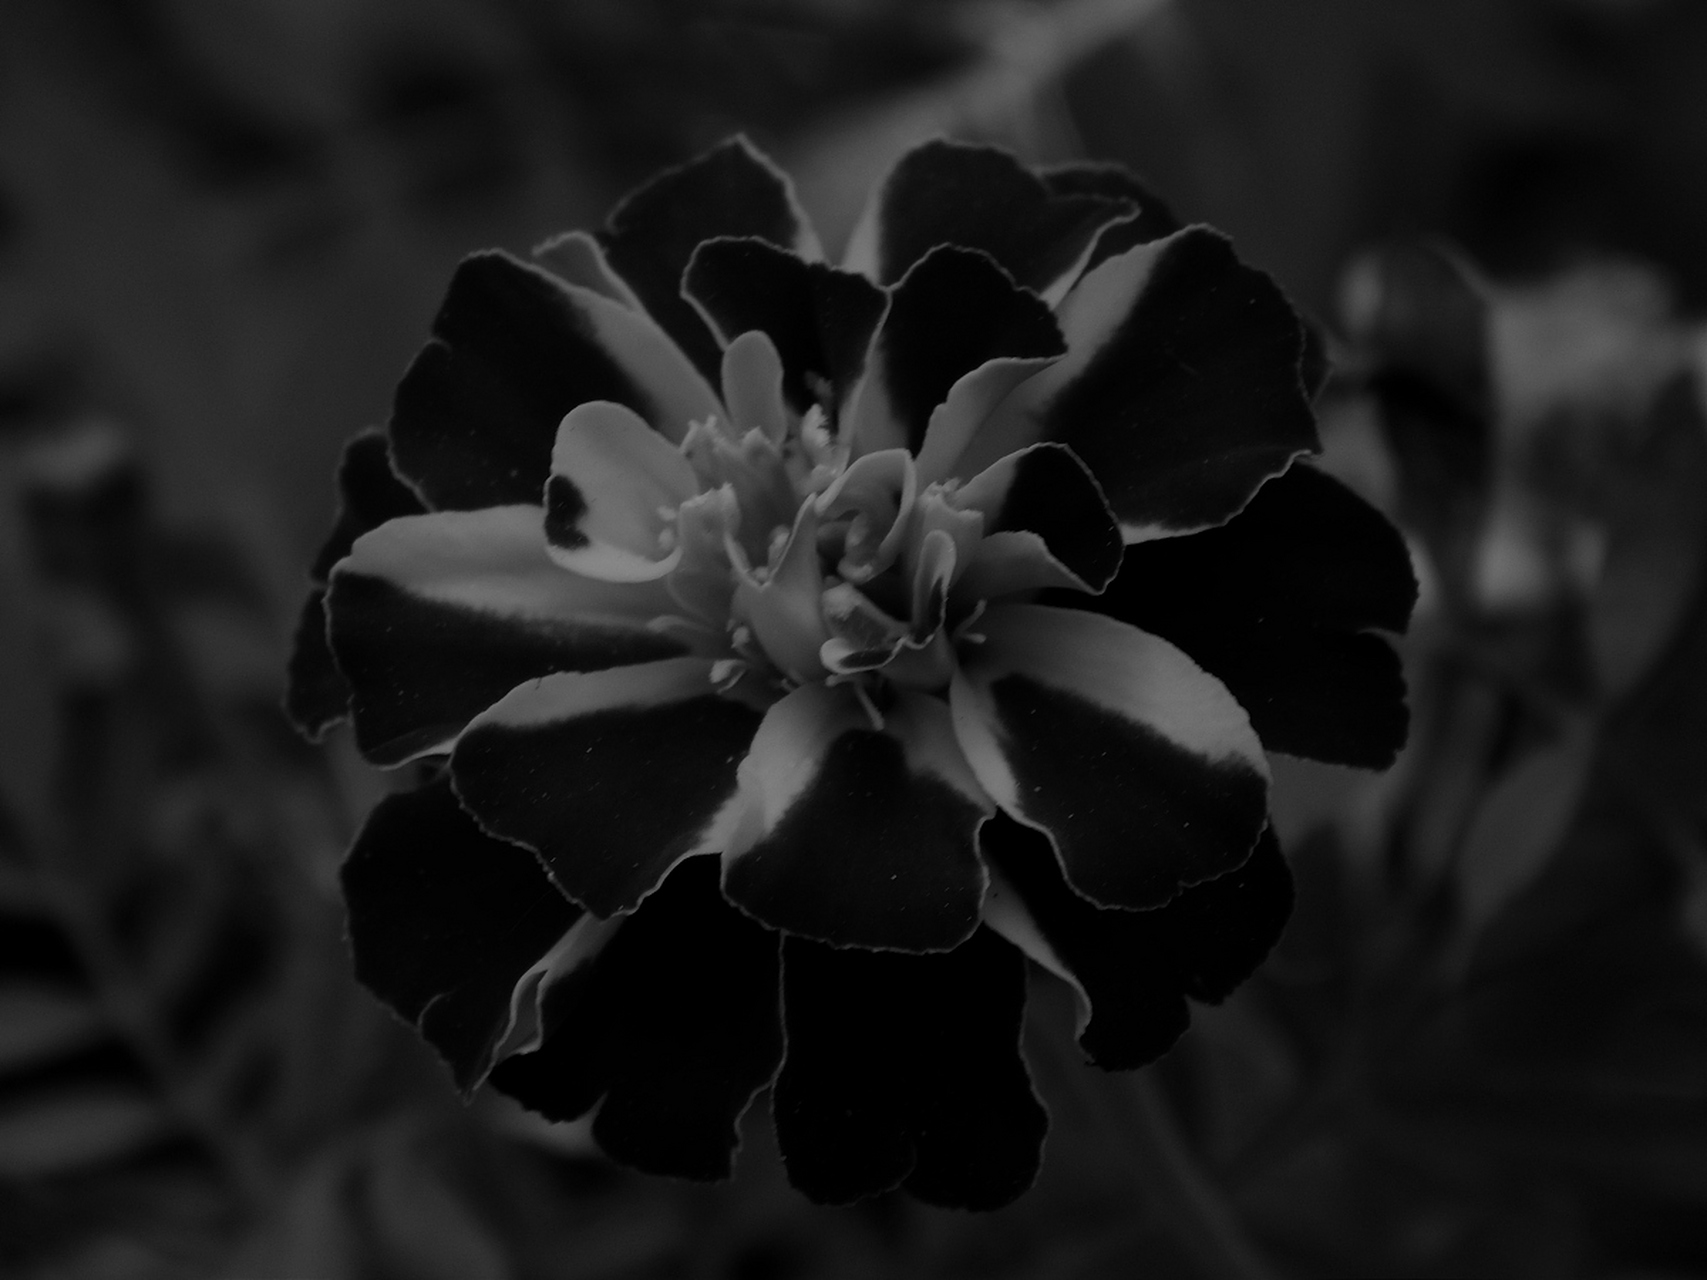 黑色曼陀罗,以其独特的花语,向世人传递着一种深邃而复杂的情感